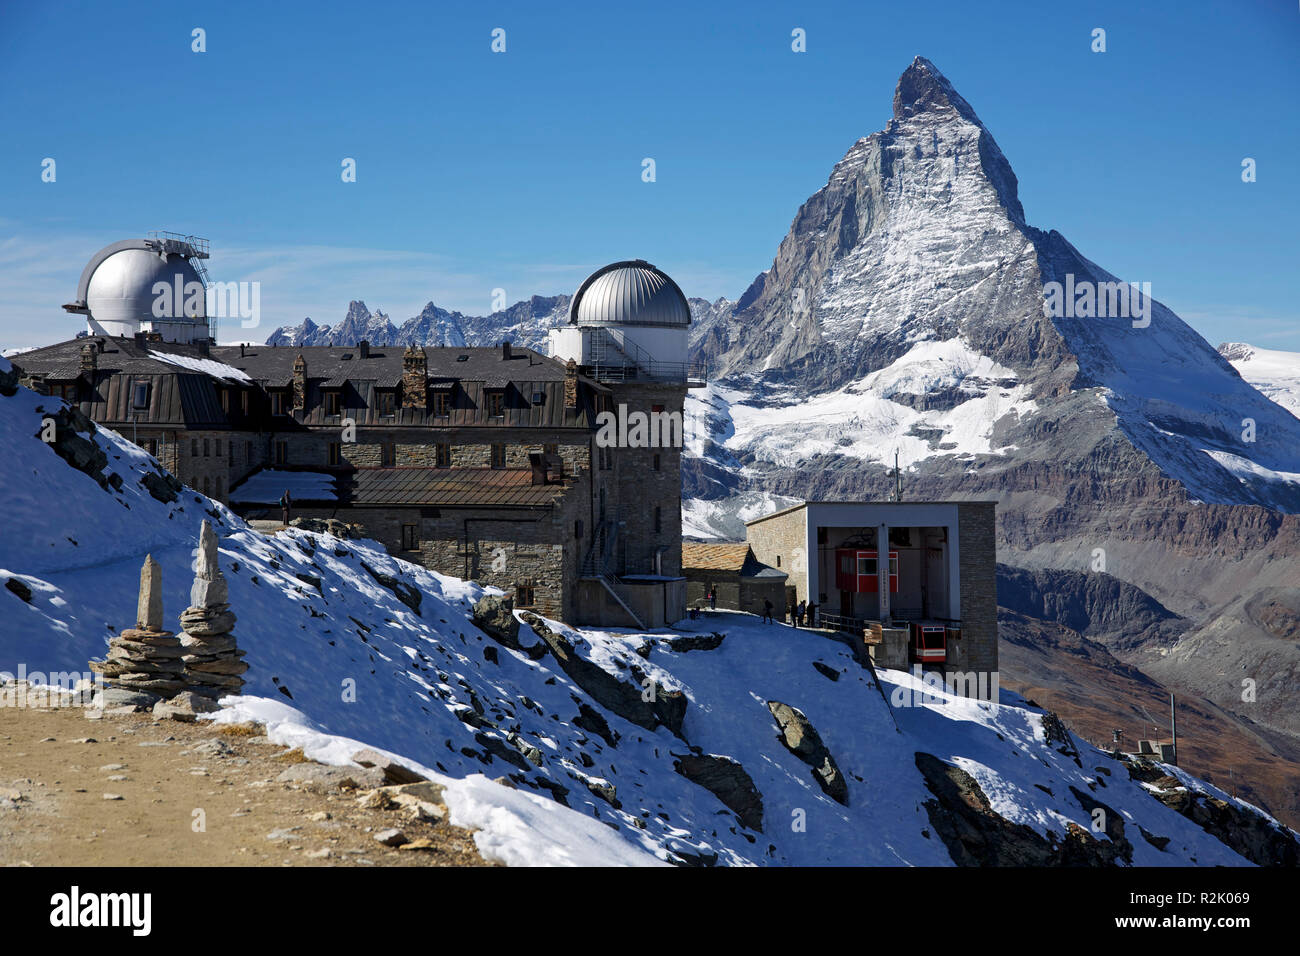 Hotel, osservatorio Stockhorn e funivia sul Gorner dorsale nei pressi di Zermatt. La vista del matterhorn Foto Stock